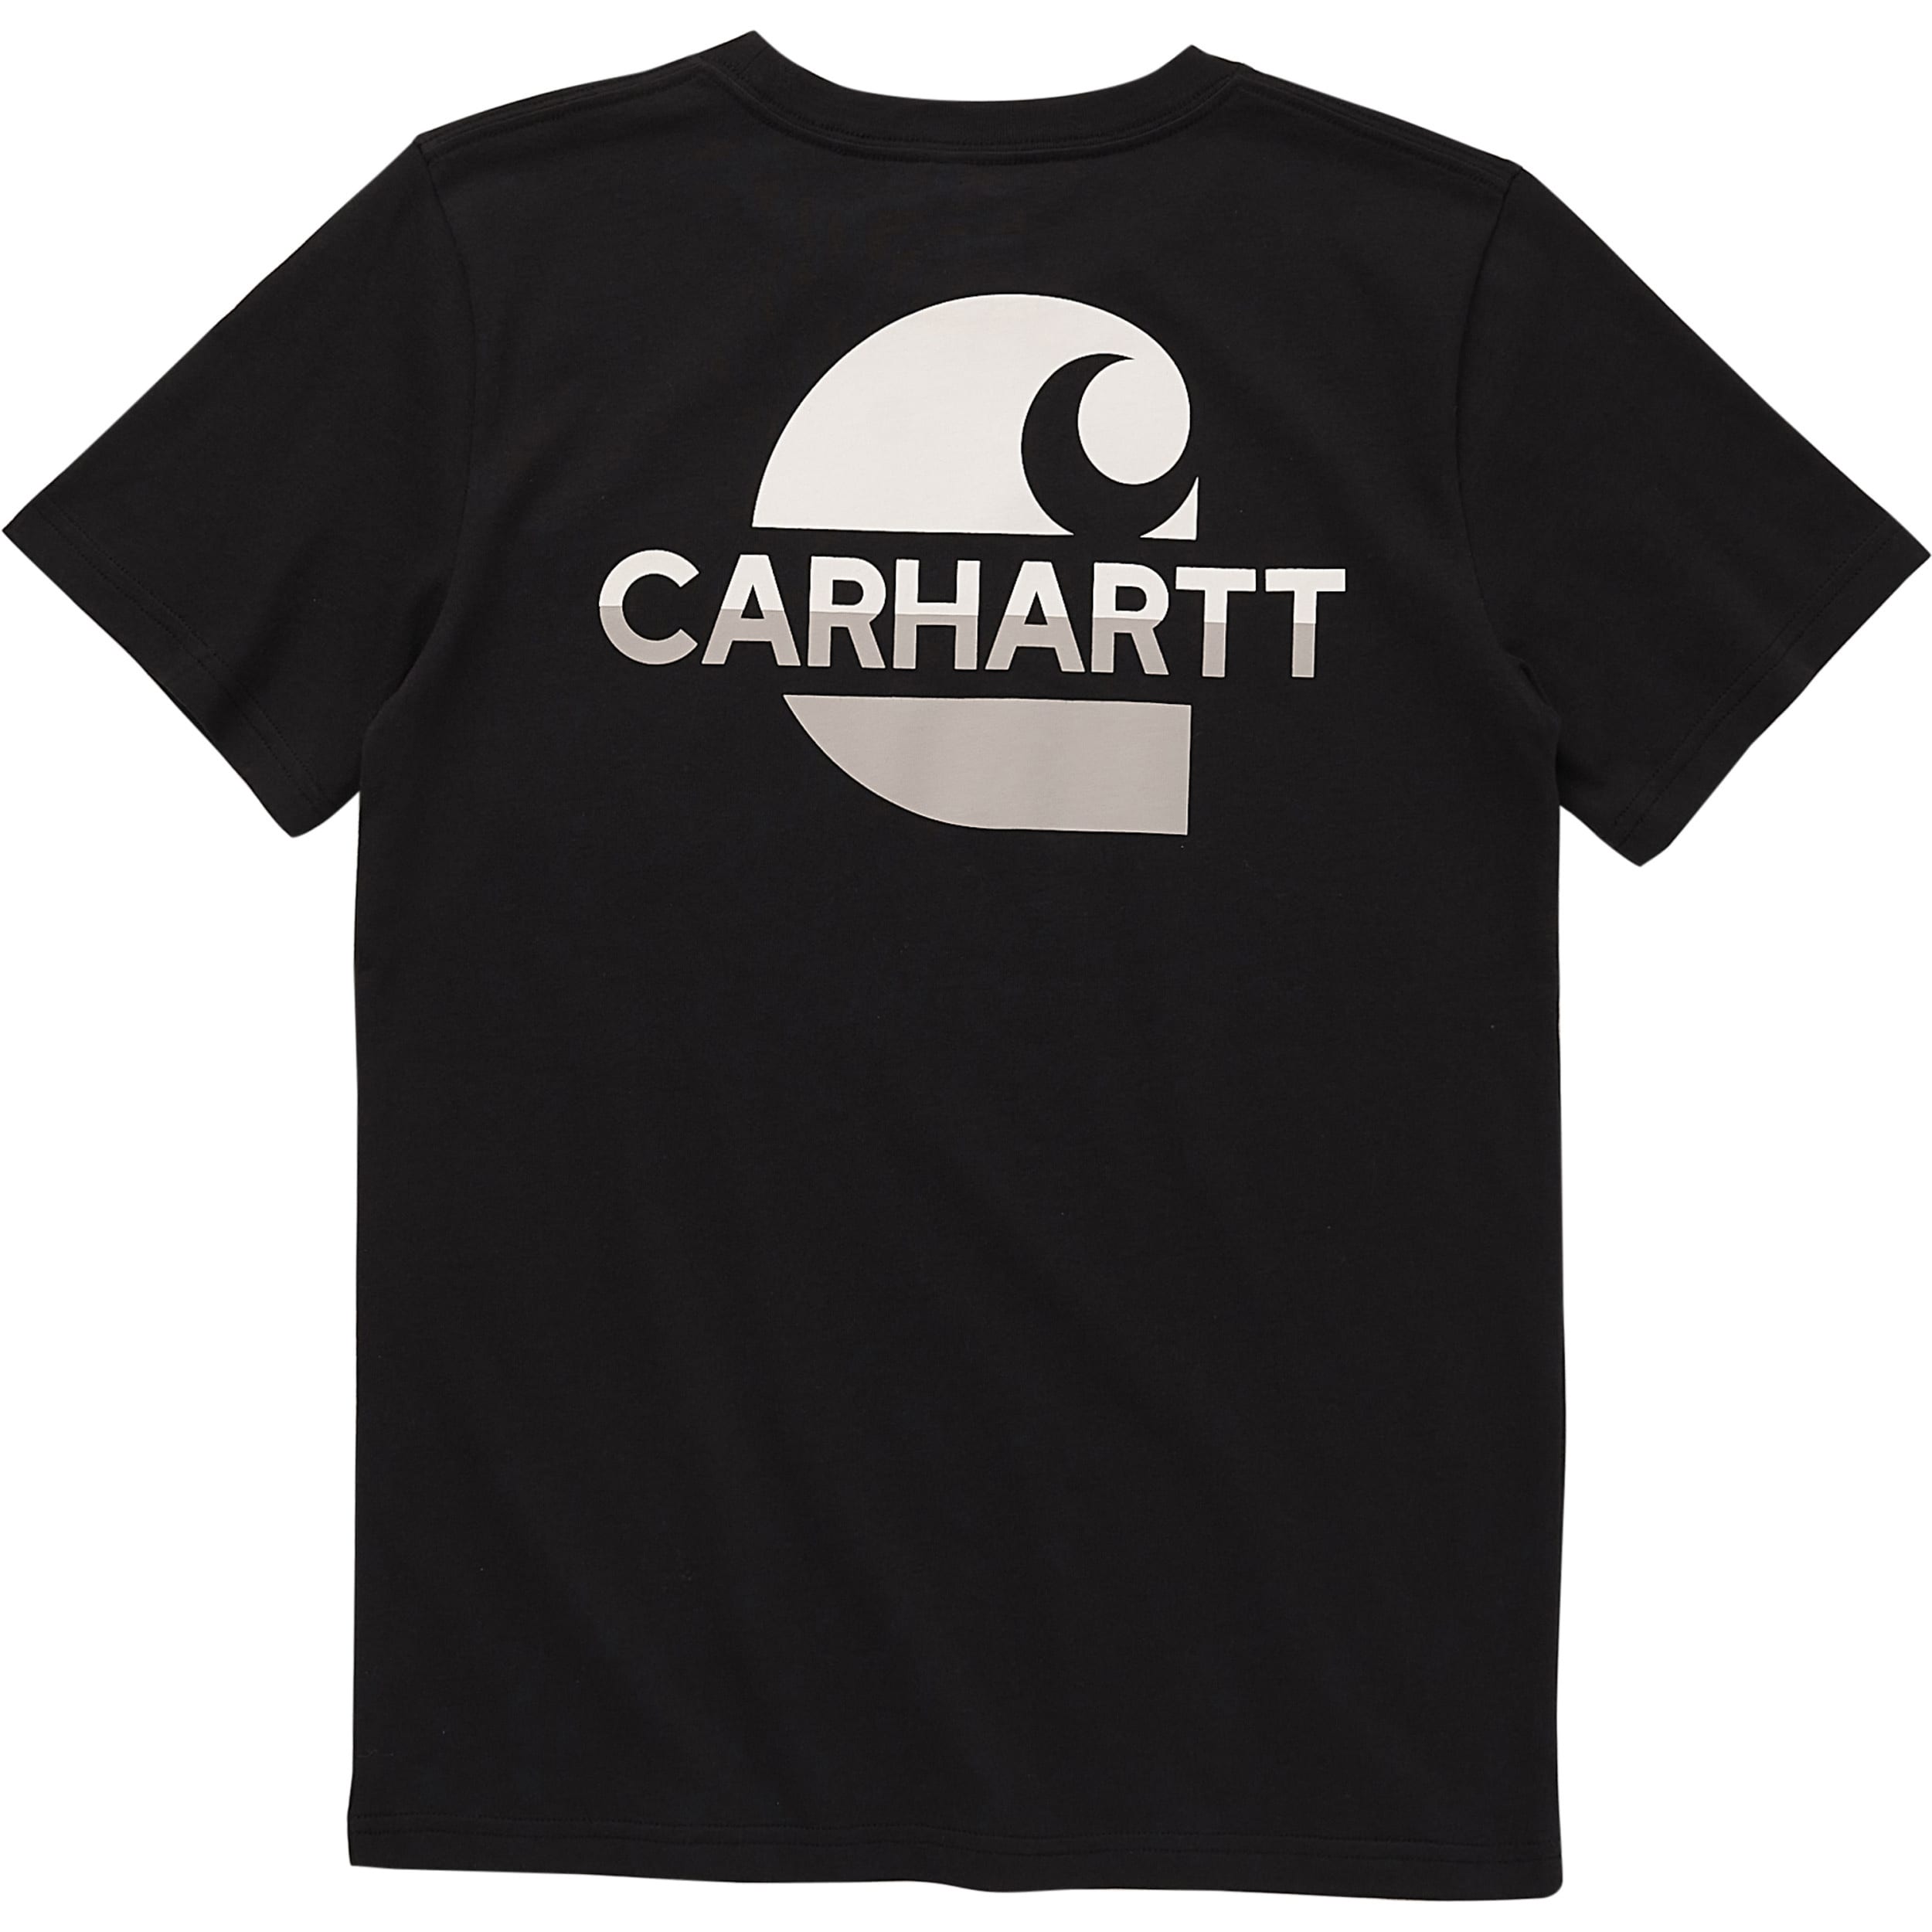 Carhartt® Boys' Fleece Long-Sleeve Logo Sweatshirt